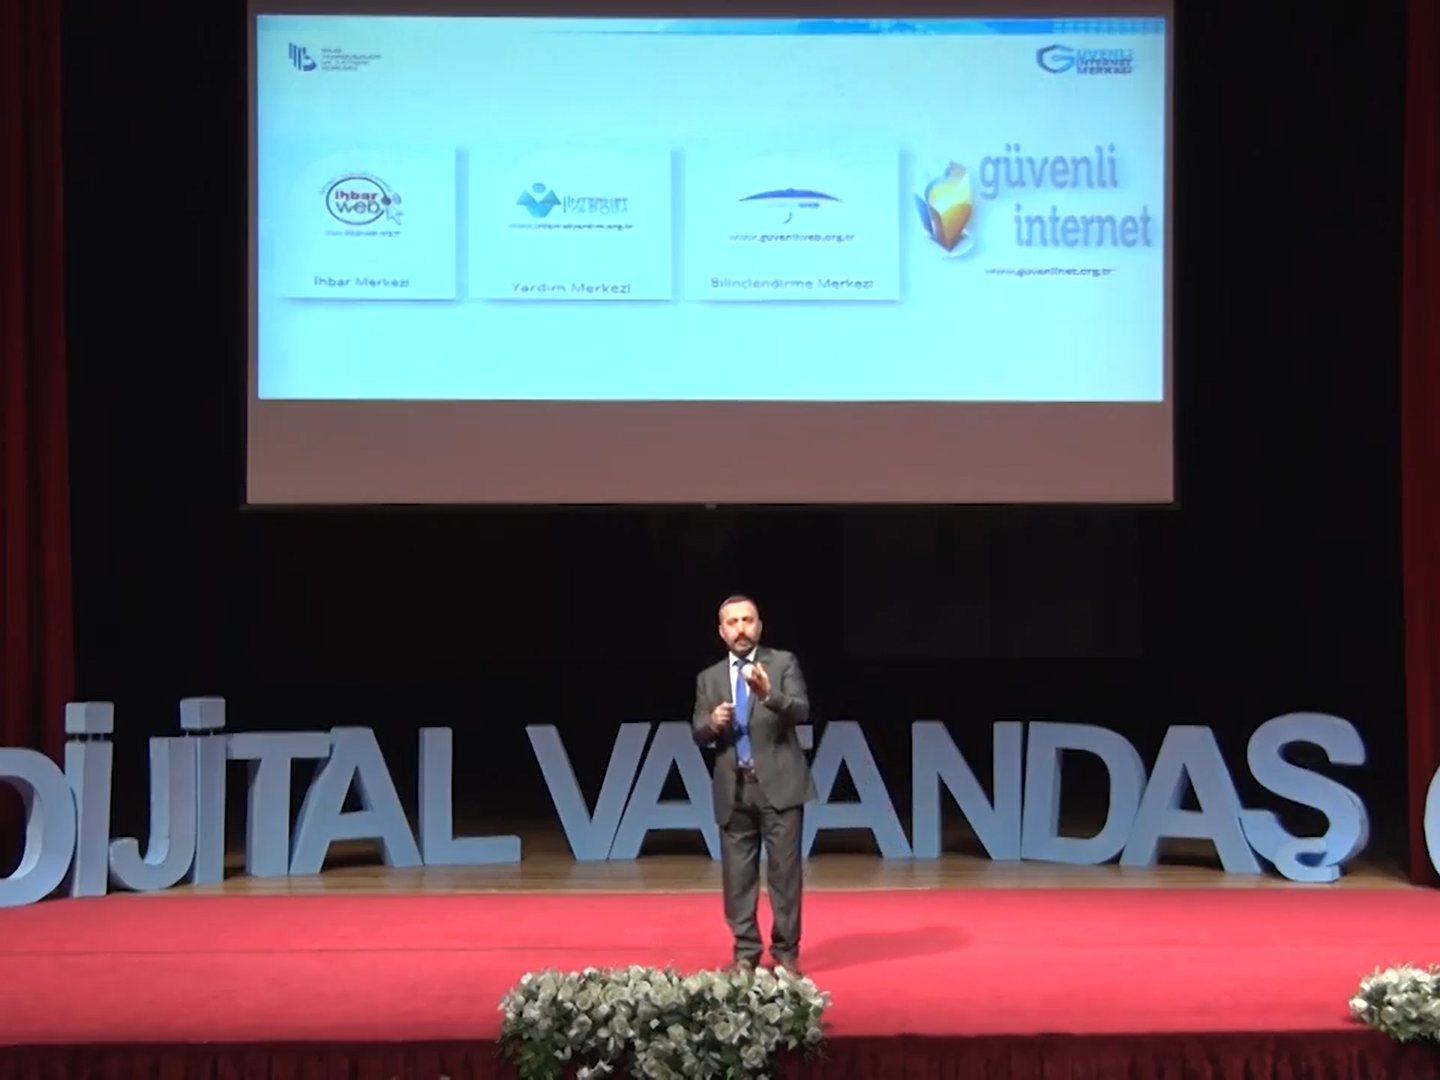 İzmir Üniversiteleri Platformu - "Dijital Vatandaşlık Konferansı"